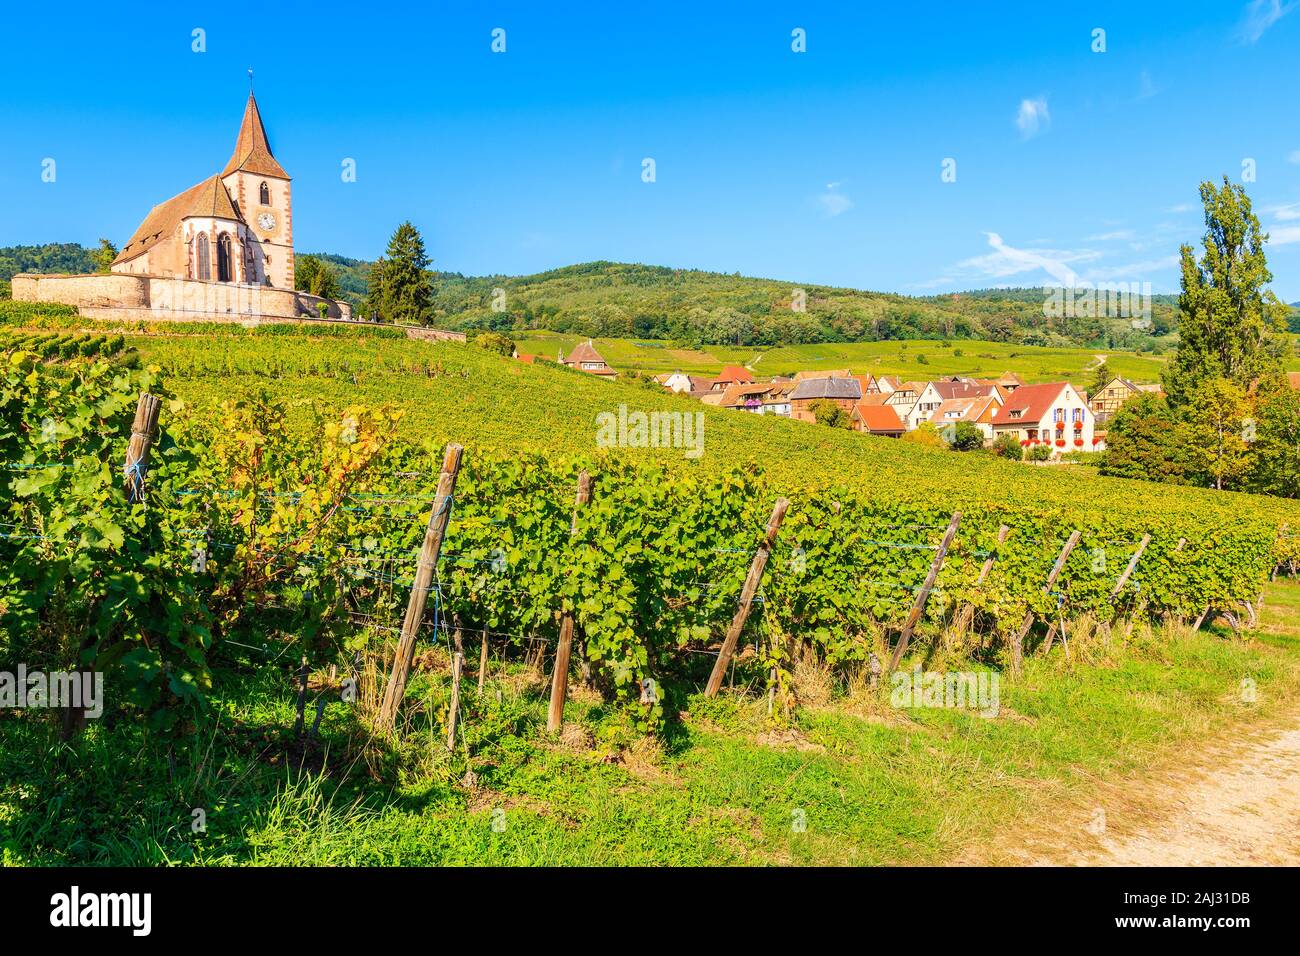 Pittoresca chiesa di vigneti nel famoso villaggio Hunawihr, Alsazia strada del vino, Francia Foto Stock